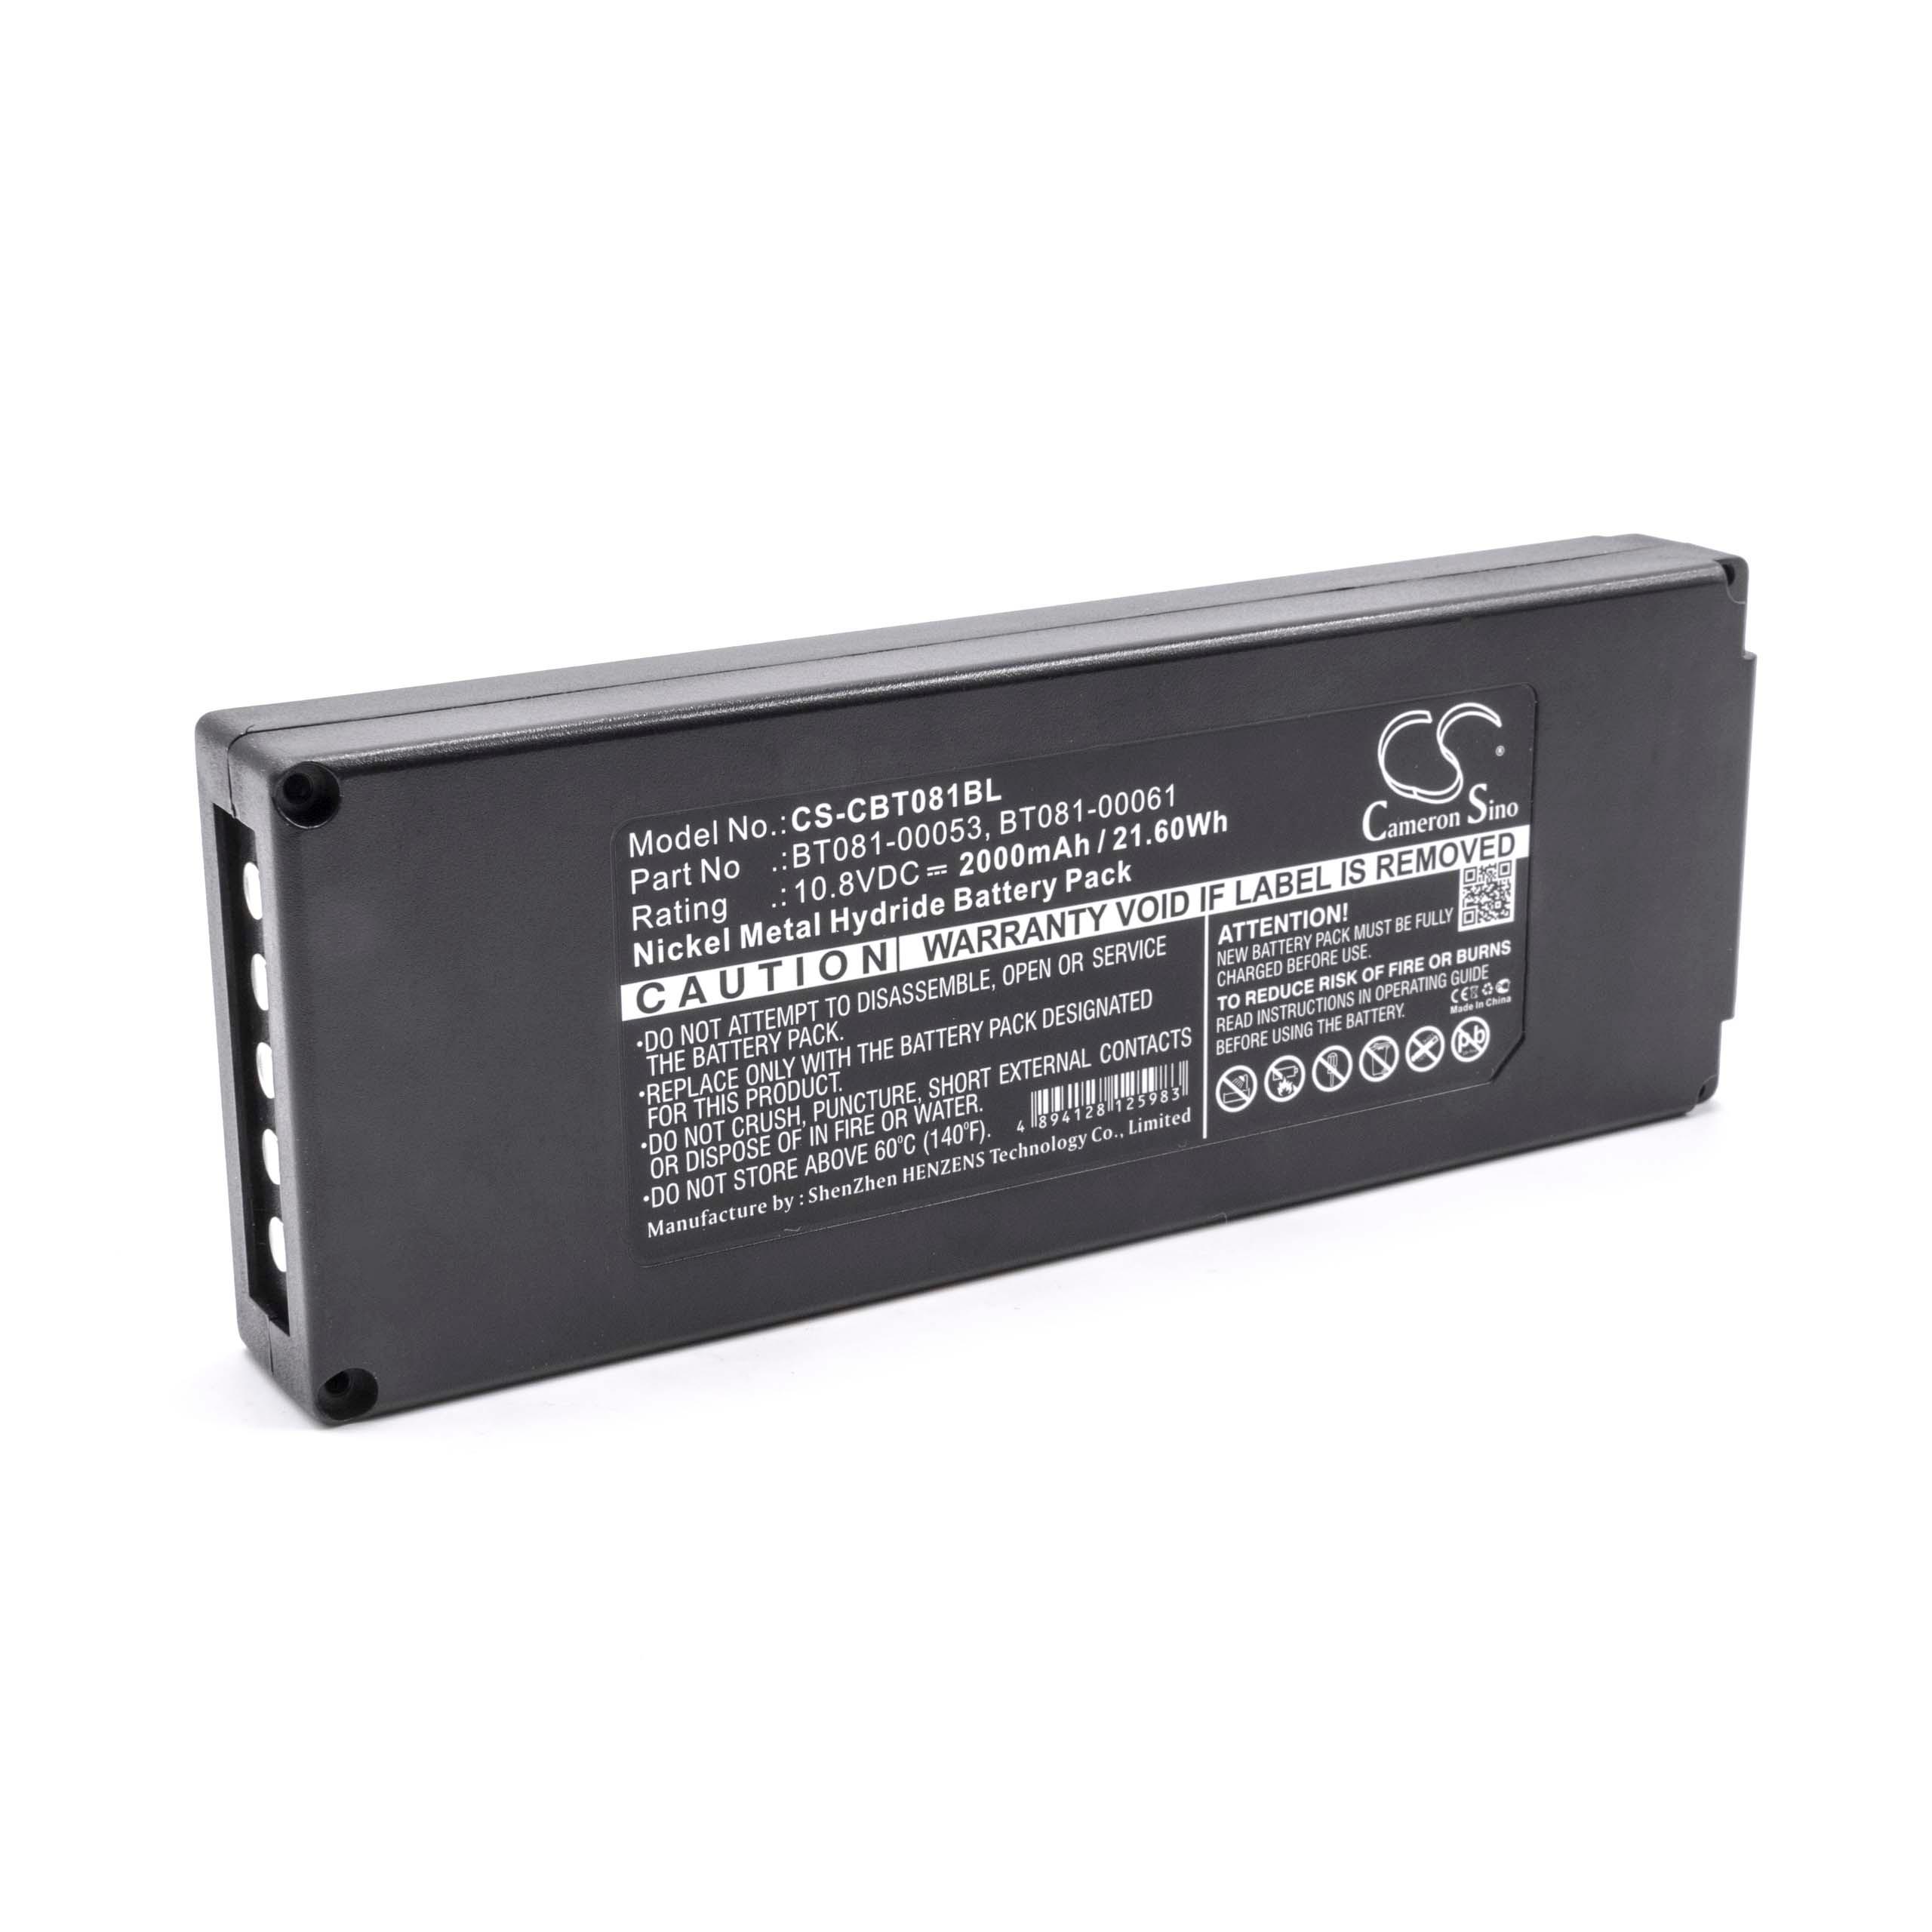 Batteria per telecomando remote controller sostituisce Cattron-Theimeg B5018-00061 - 2000mAh, 10,8V NiMH